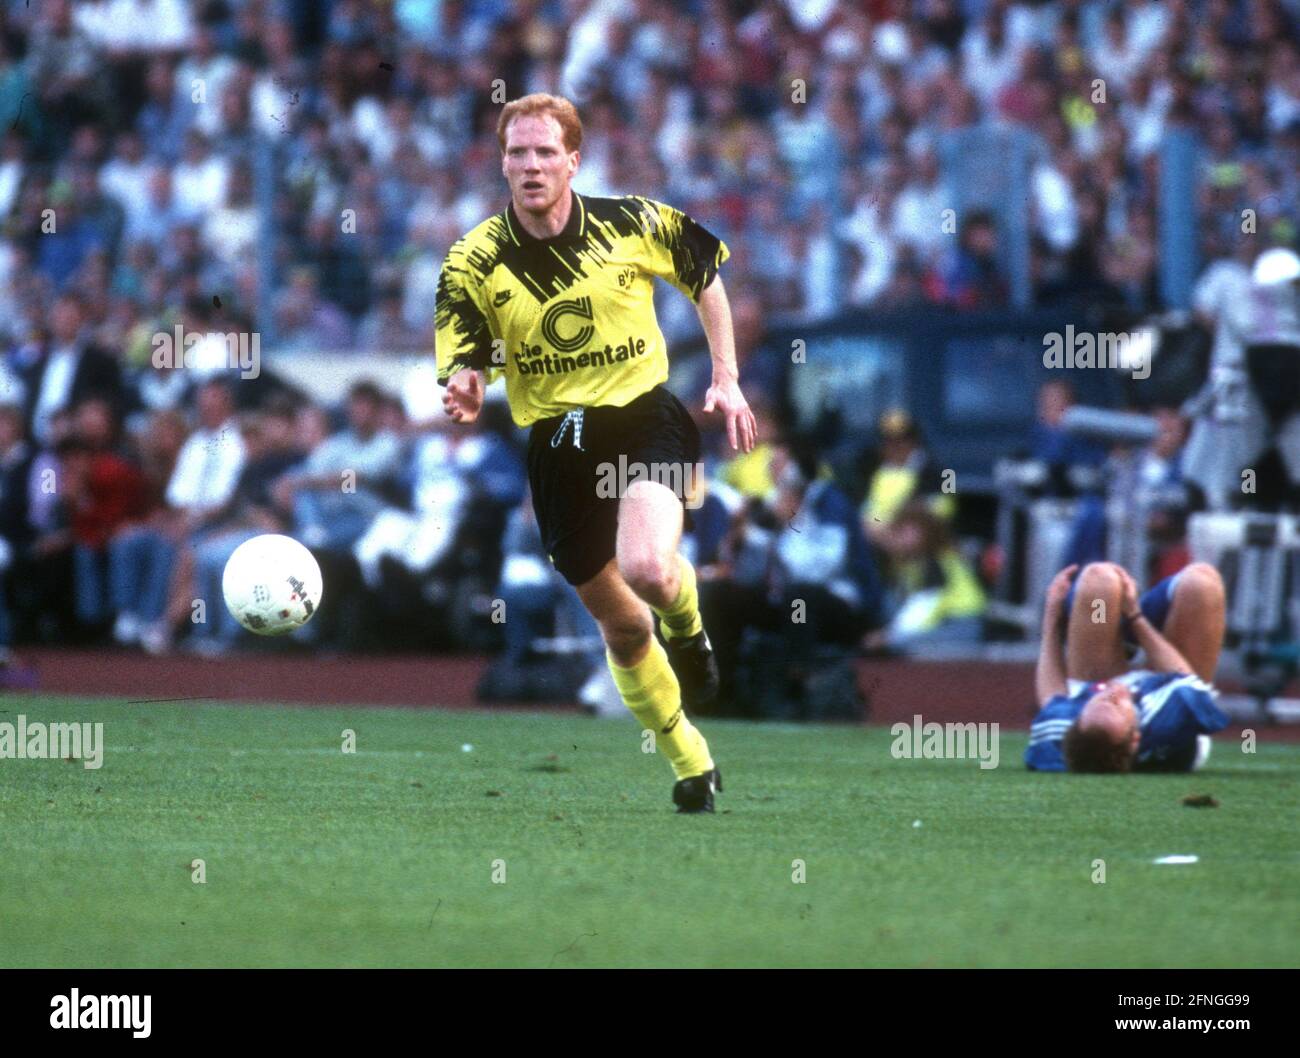 FC Schalke 04 - Borussia Dortmund 1:0 15.08.1993 / Matthias Sammer (BVB) en action, à droite un joueur Schalke blessé se trouve sur le terrain [traduction automatique] Banque D'Images